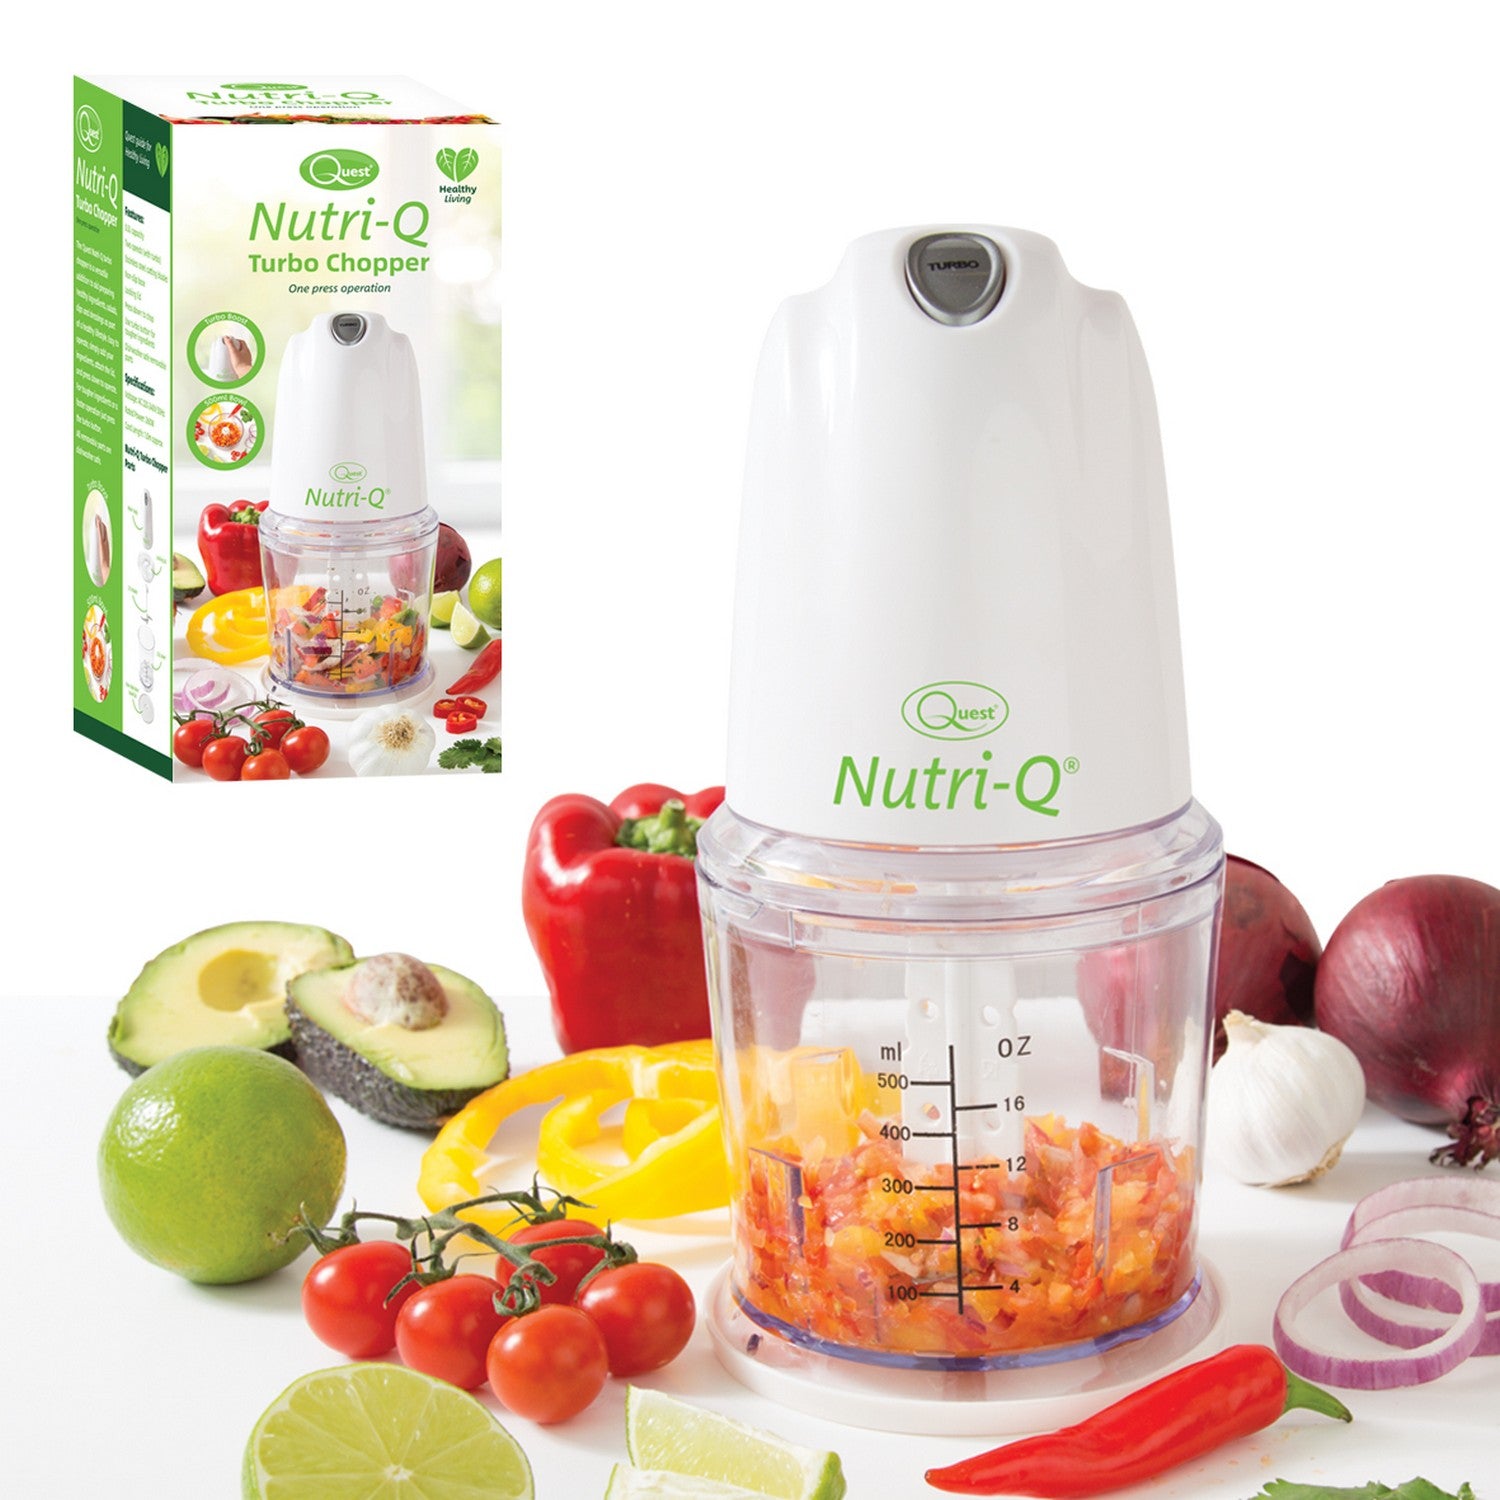 Quest Nutri-Q Turbo Kitchen Mini Processor Food Chopper